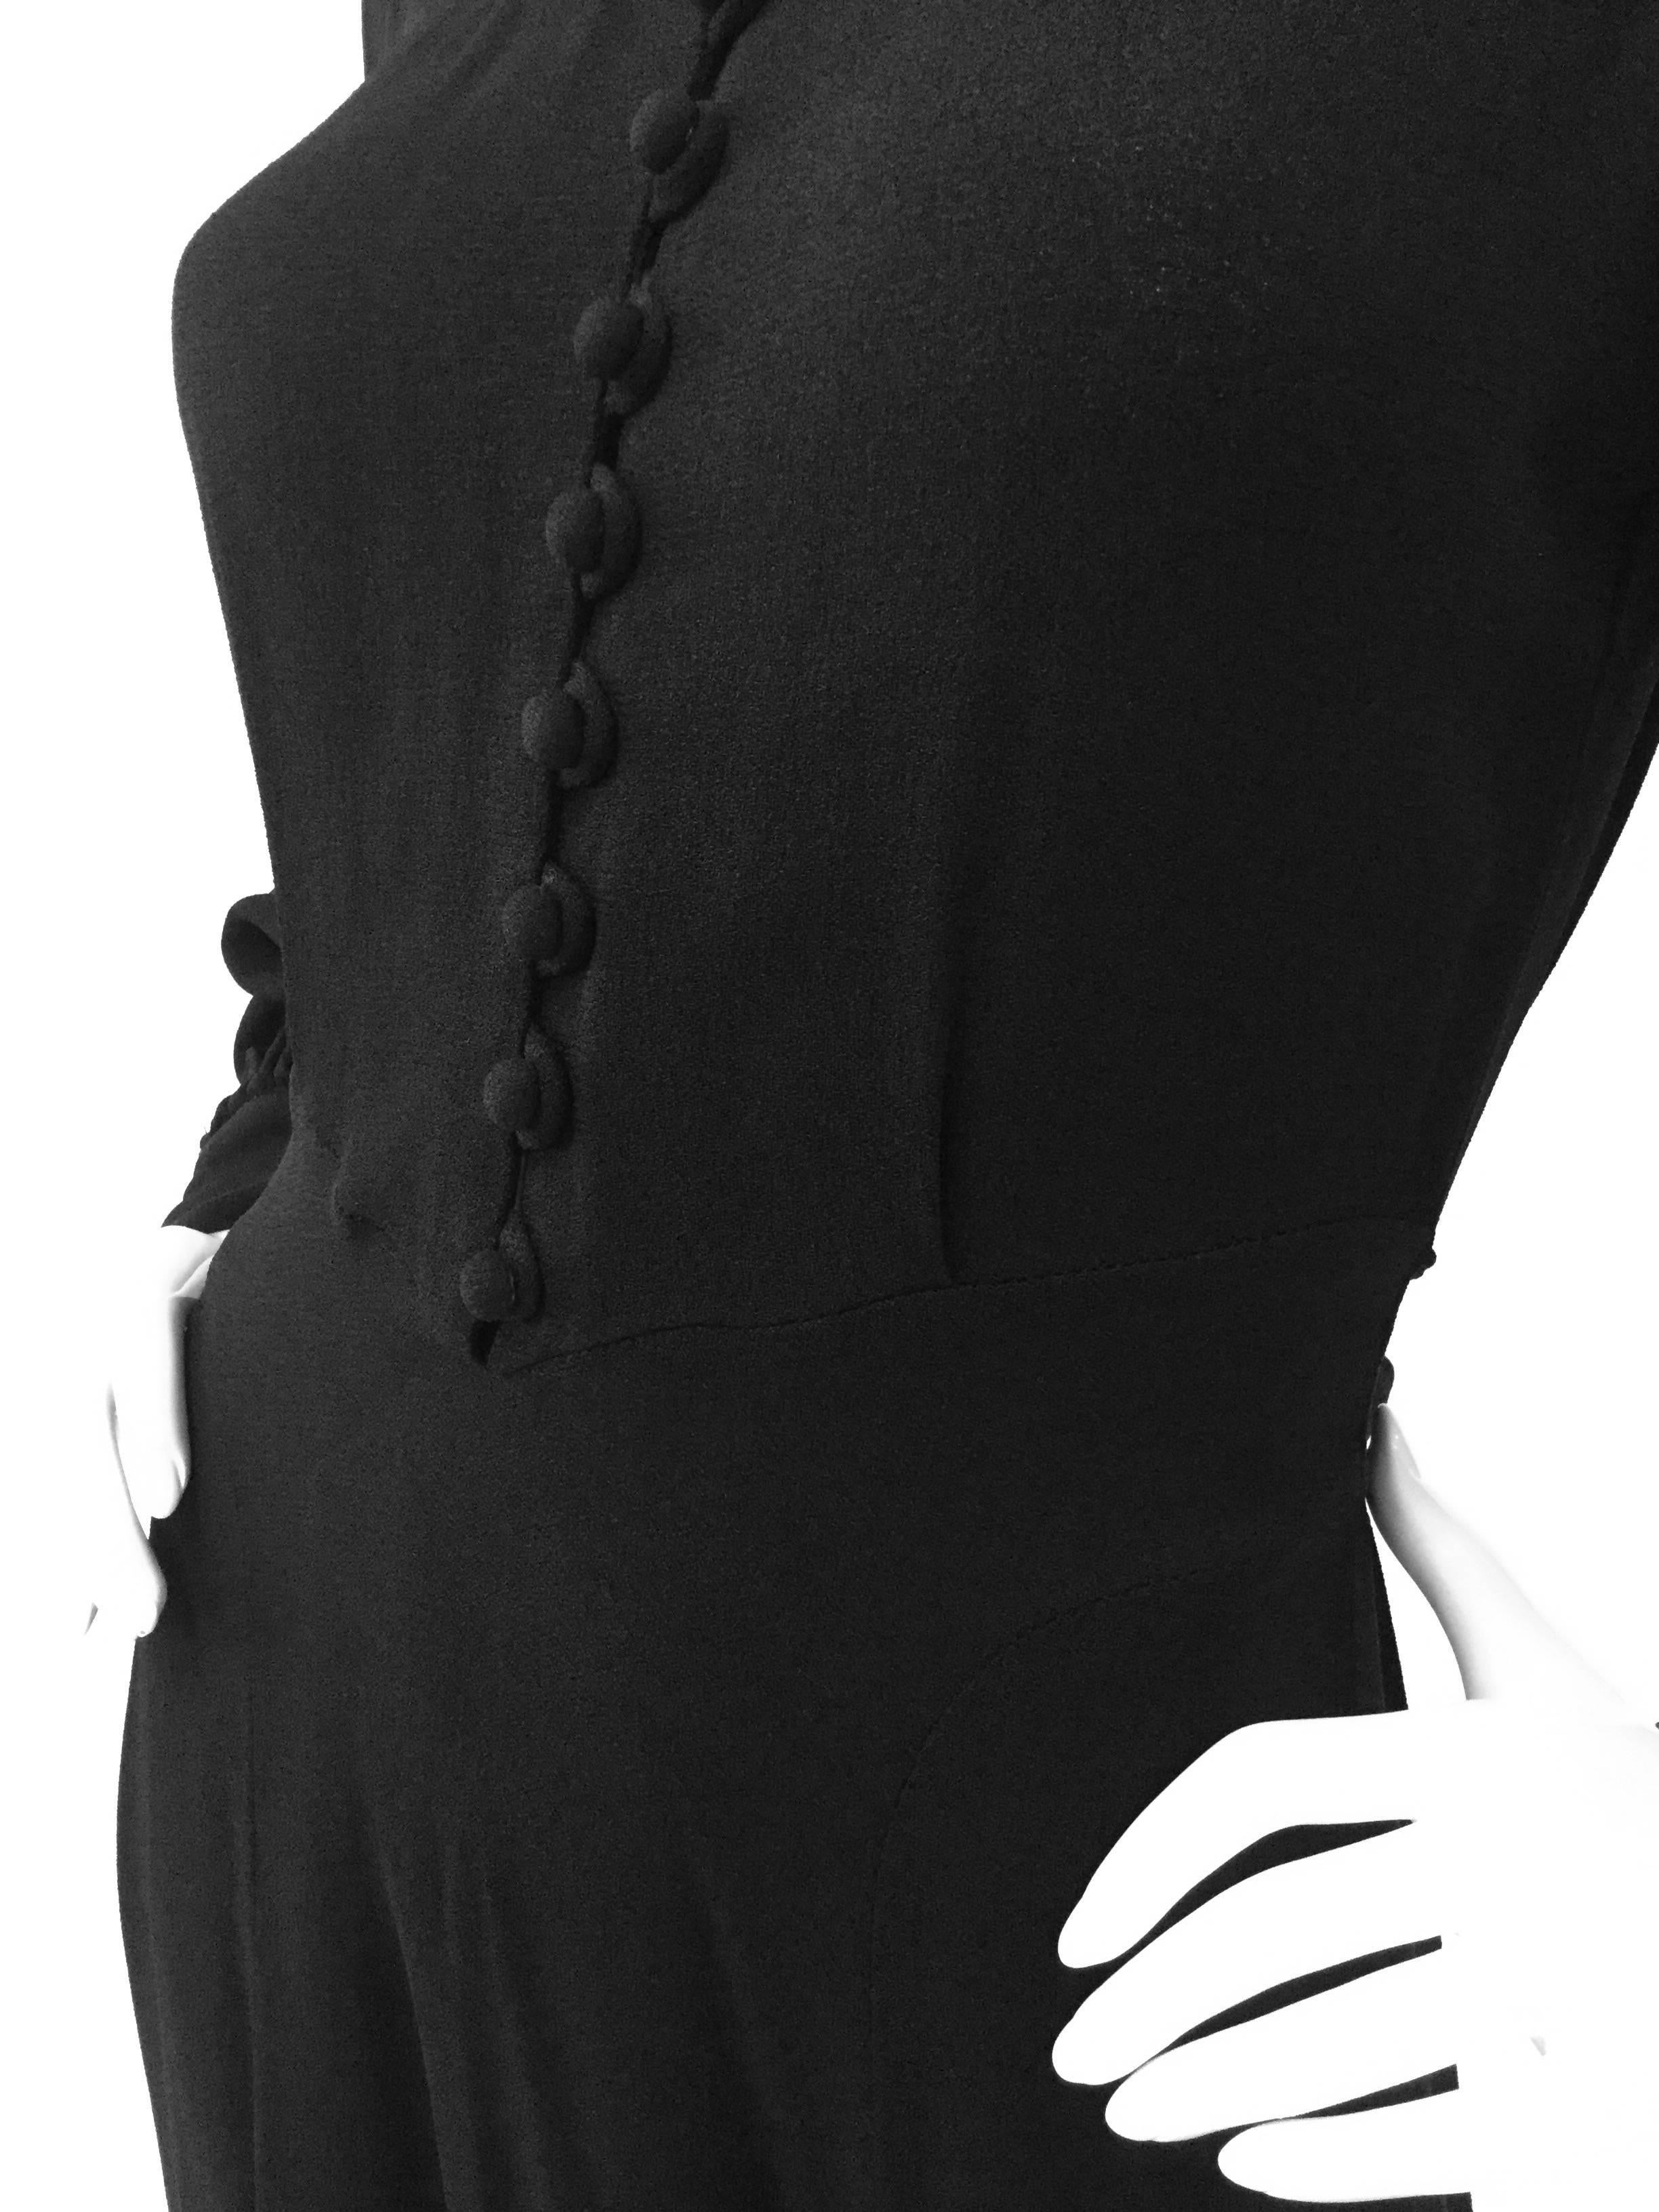 Women's 1970s Ossie Clark for Radley Black Moss High Collar Crepe Dress